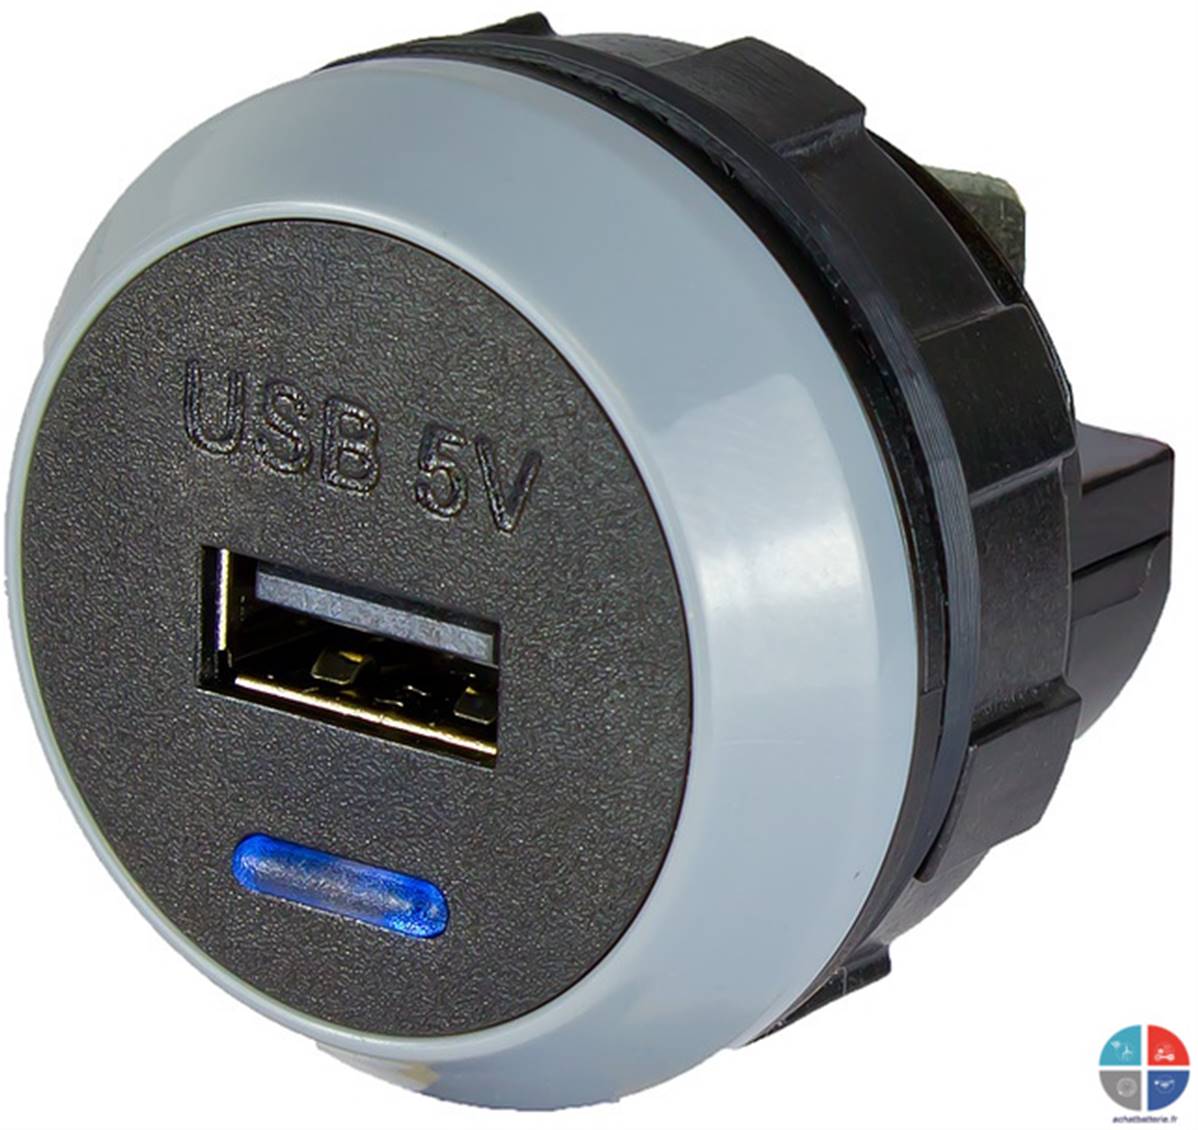 Prise USB 12v - 5v 2.1A encastrable Alfatronix, pour recharger